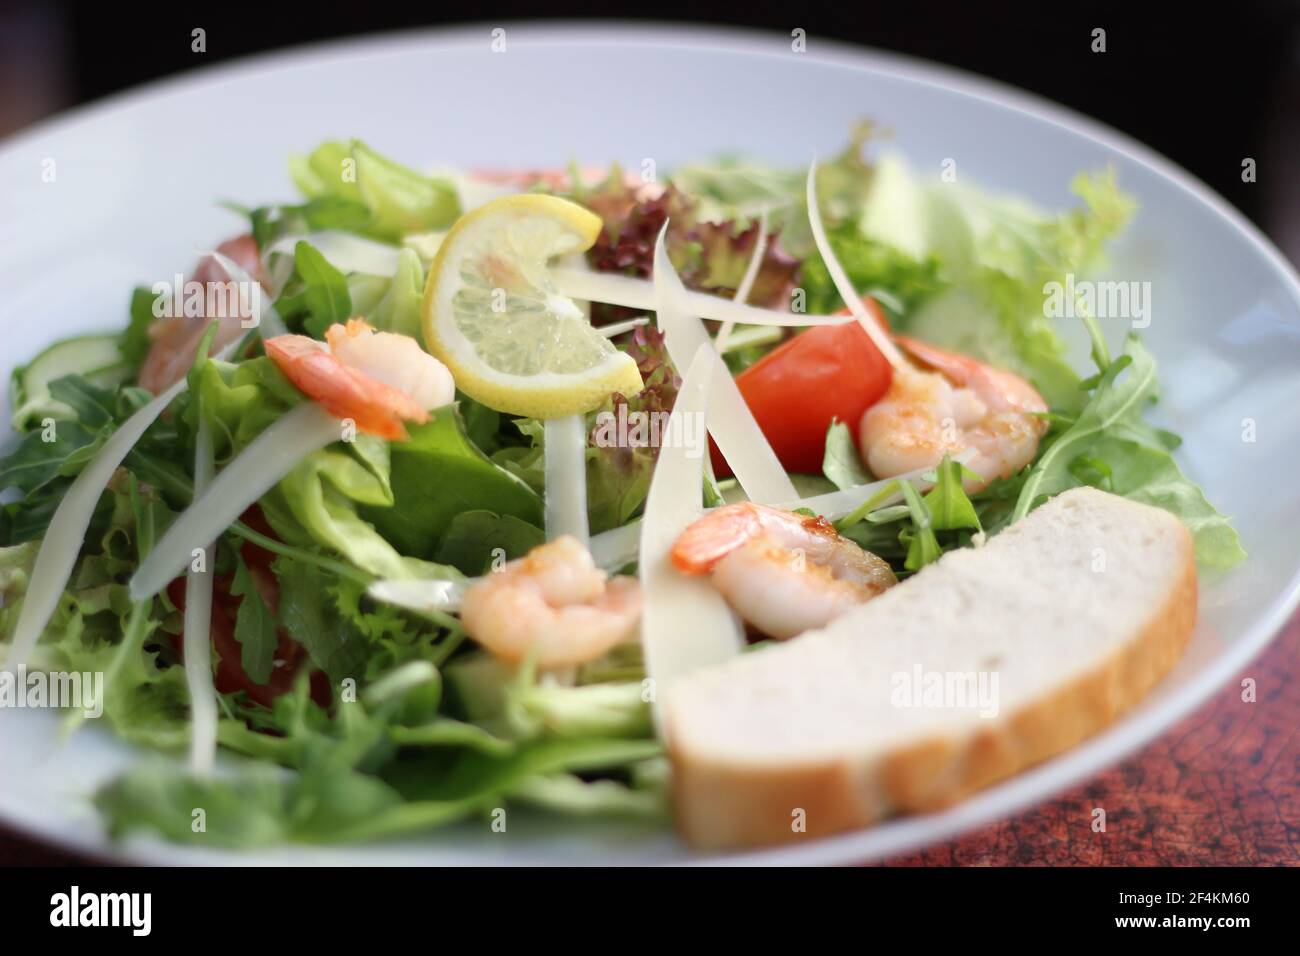 Essen im Restaurant - Salat mit frischen Zutaten Stockfoto